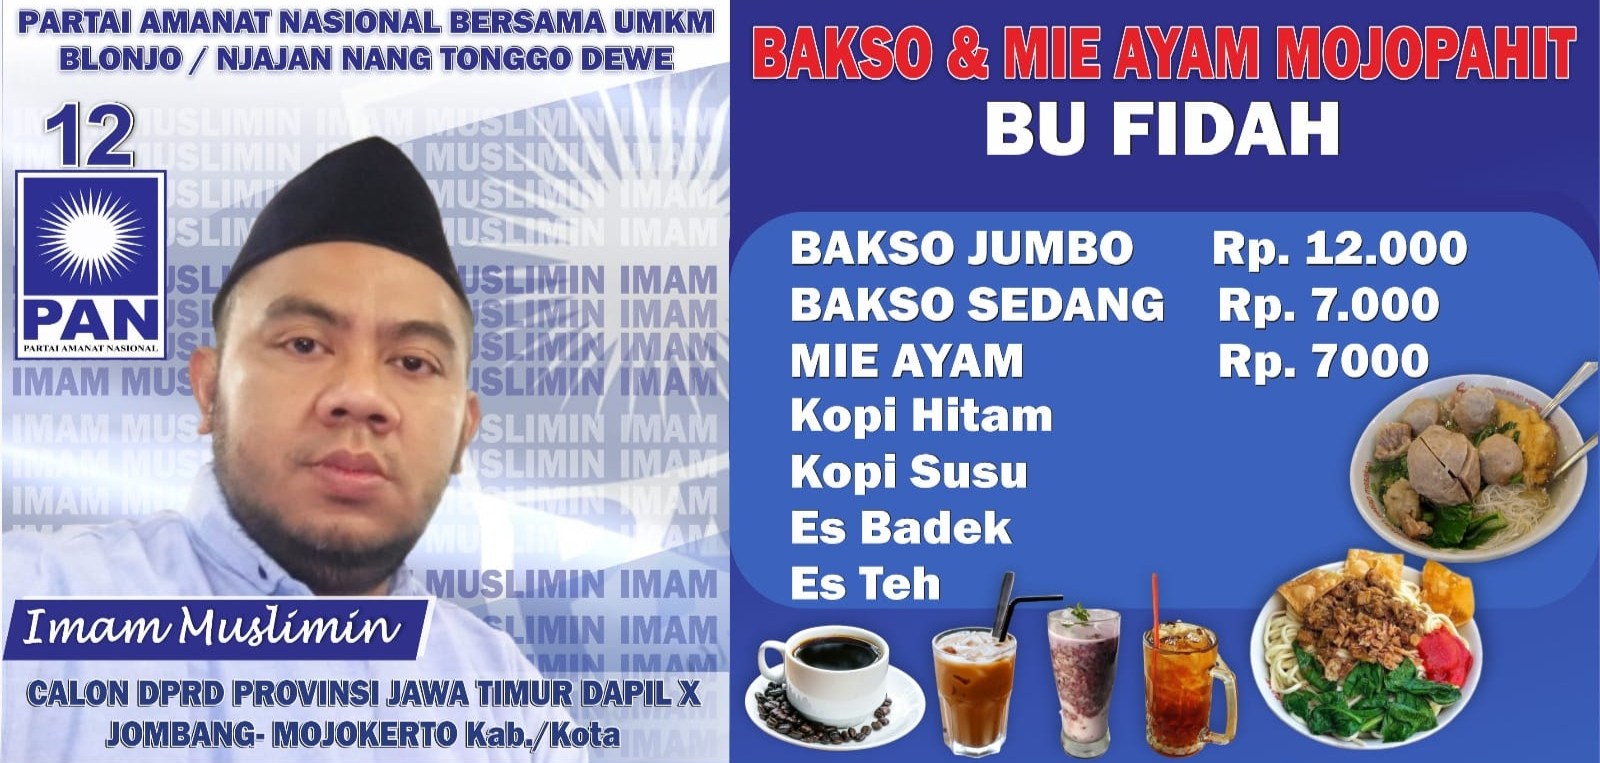 Imam Muslimin Punya Program 2000 Spanduk untuk Pelaku UMKM Jombang - Mojokerto